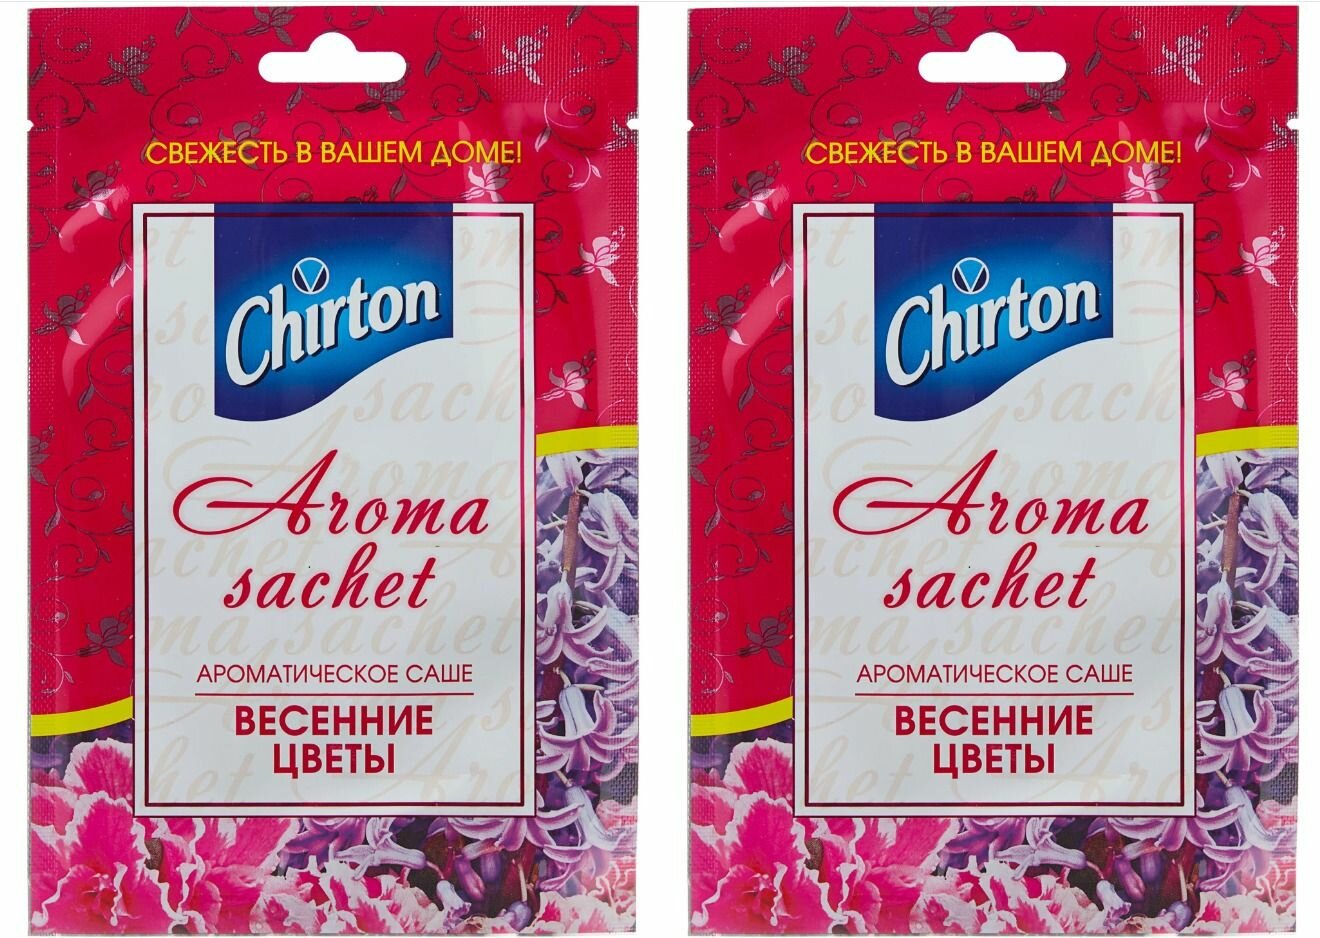 Chirton Саше ароматическое Весенние Цветы, 15гр - 2 штуки